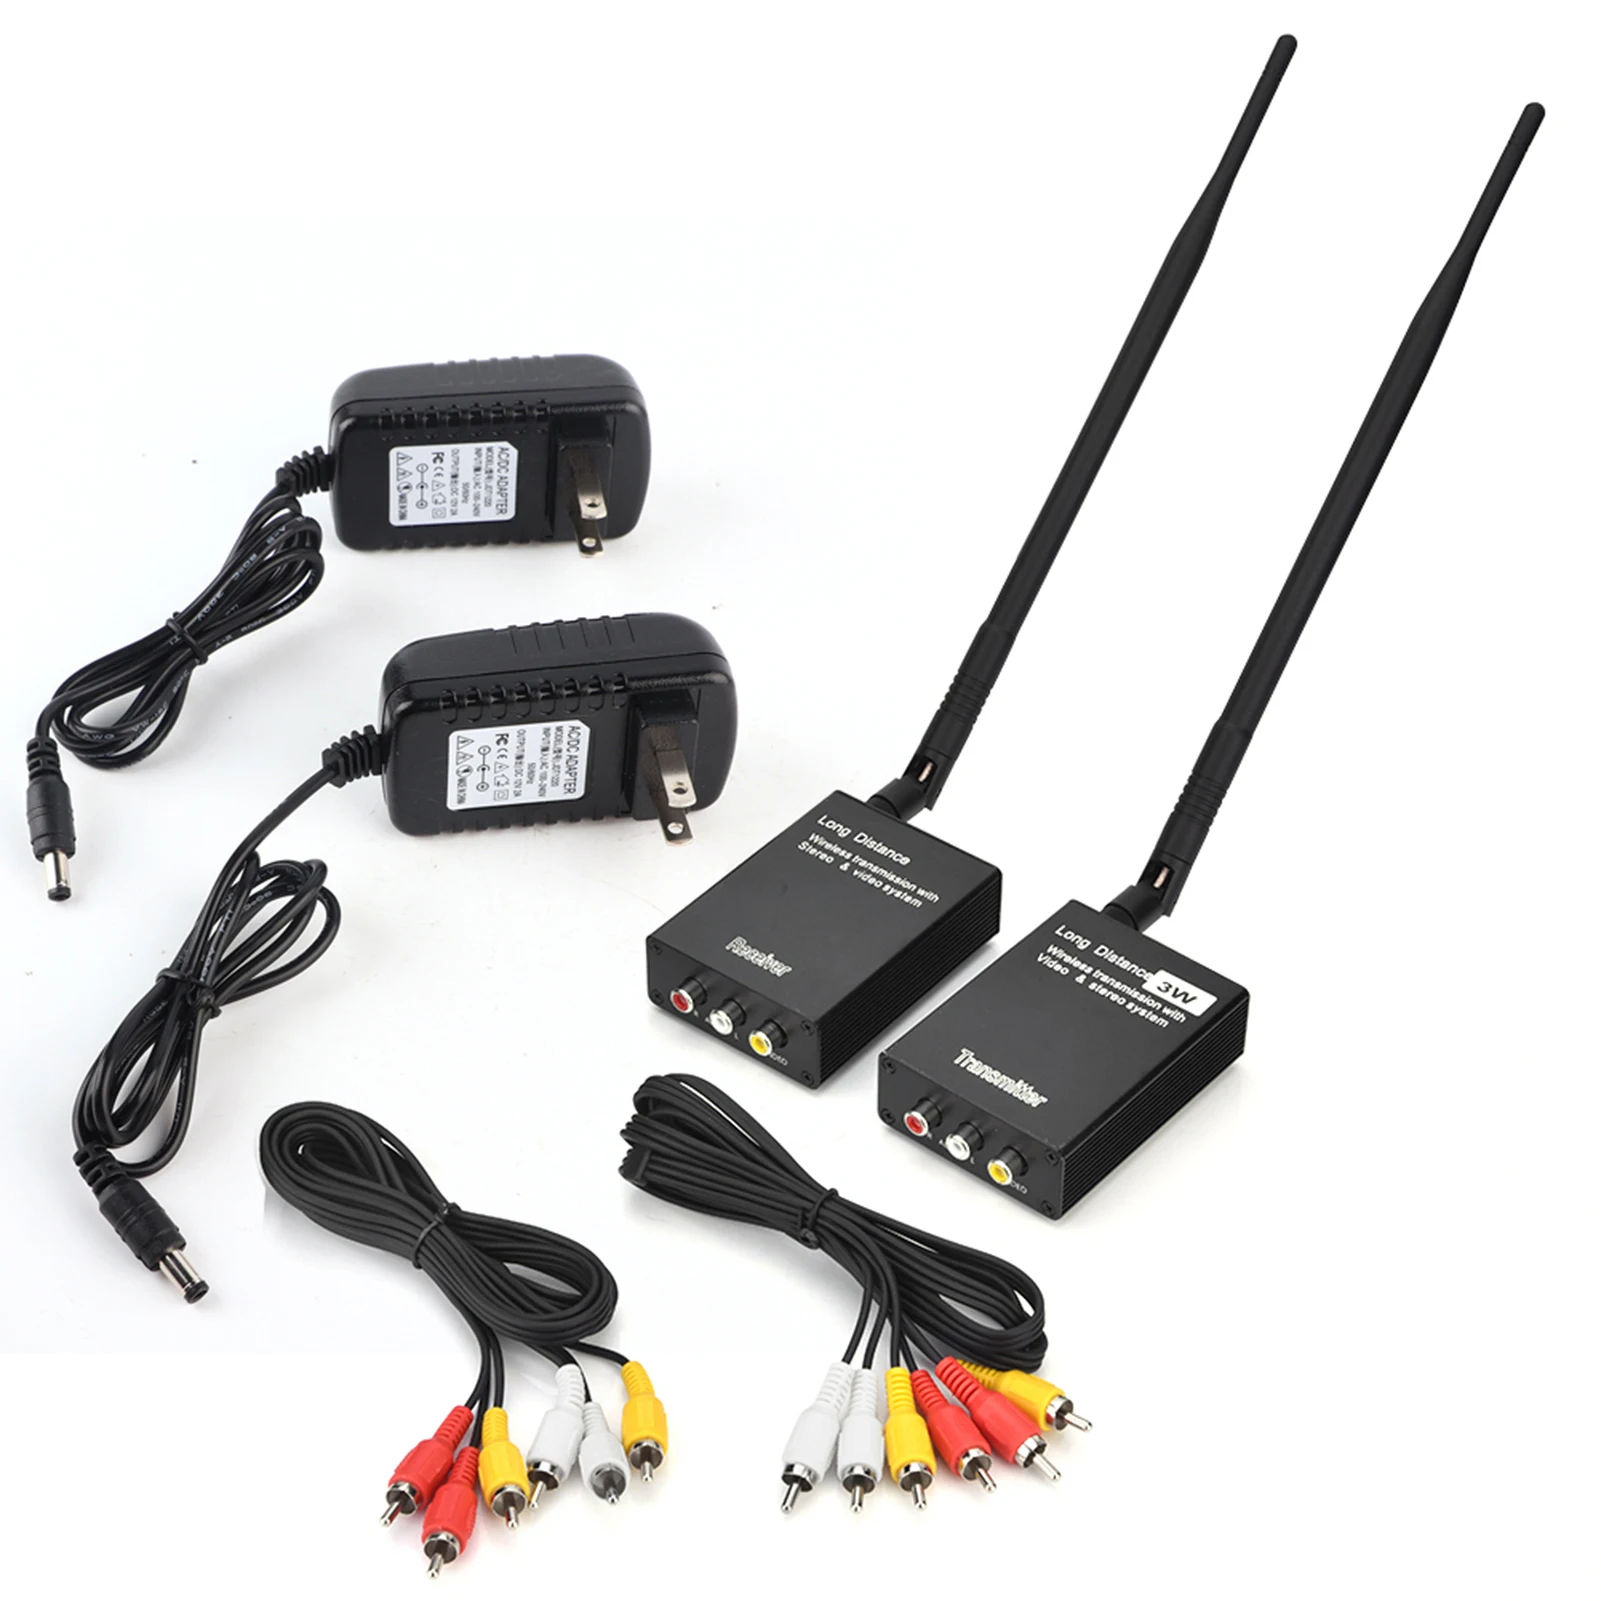 

100V‑240V 3W 2.4G Wireless AV Sender Audio Video Transmitter And Receiver Black